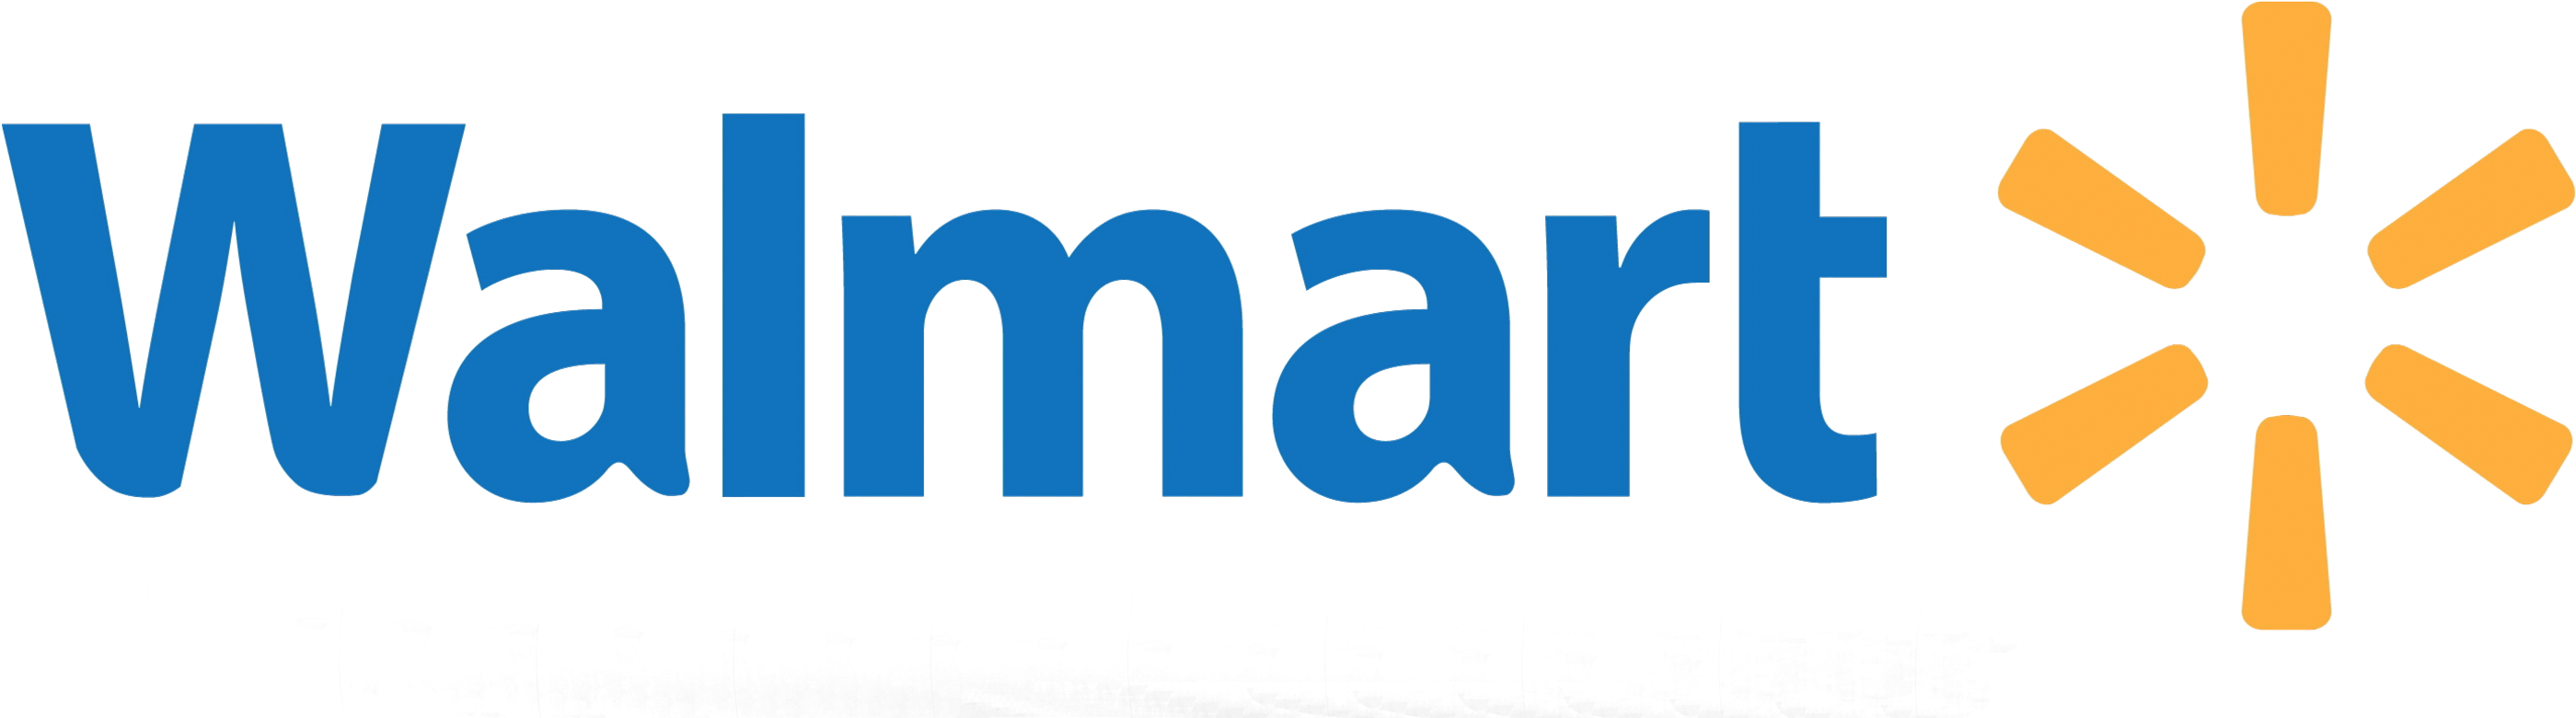 Walmart Logo Png Image Purepng Free Transparent Cc0 - Walmart Logo (3048x871)